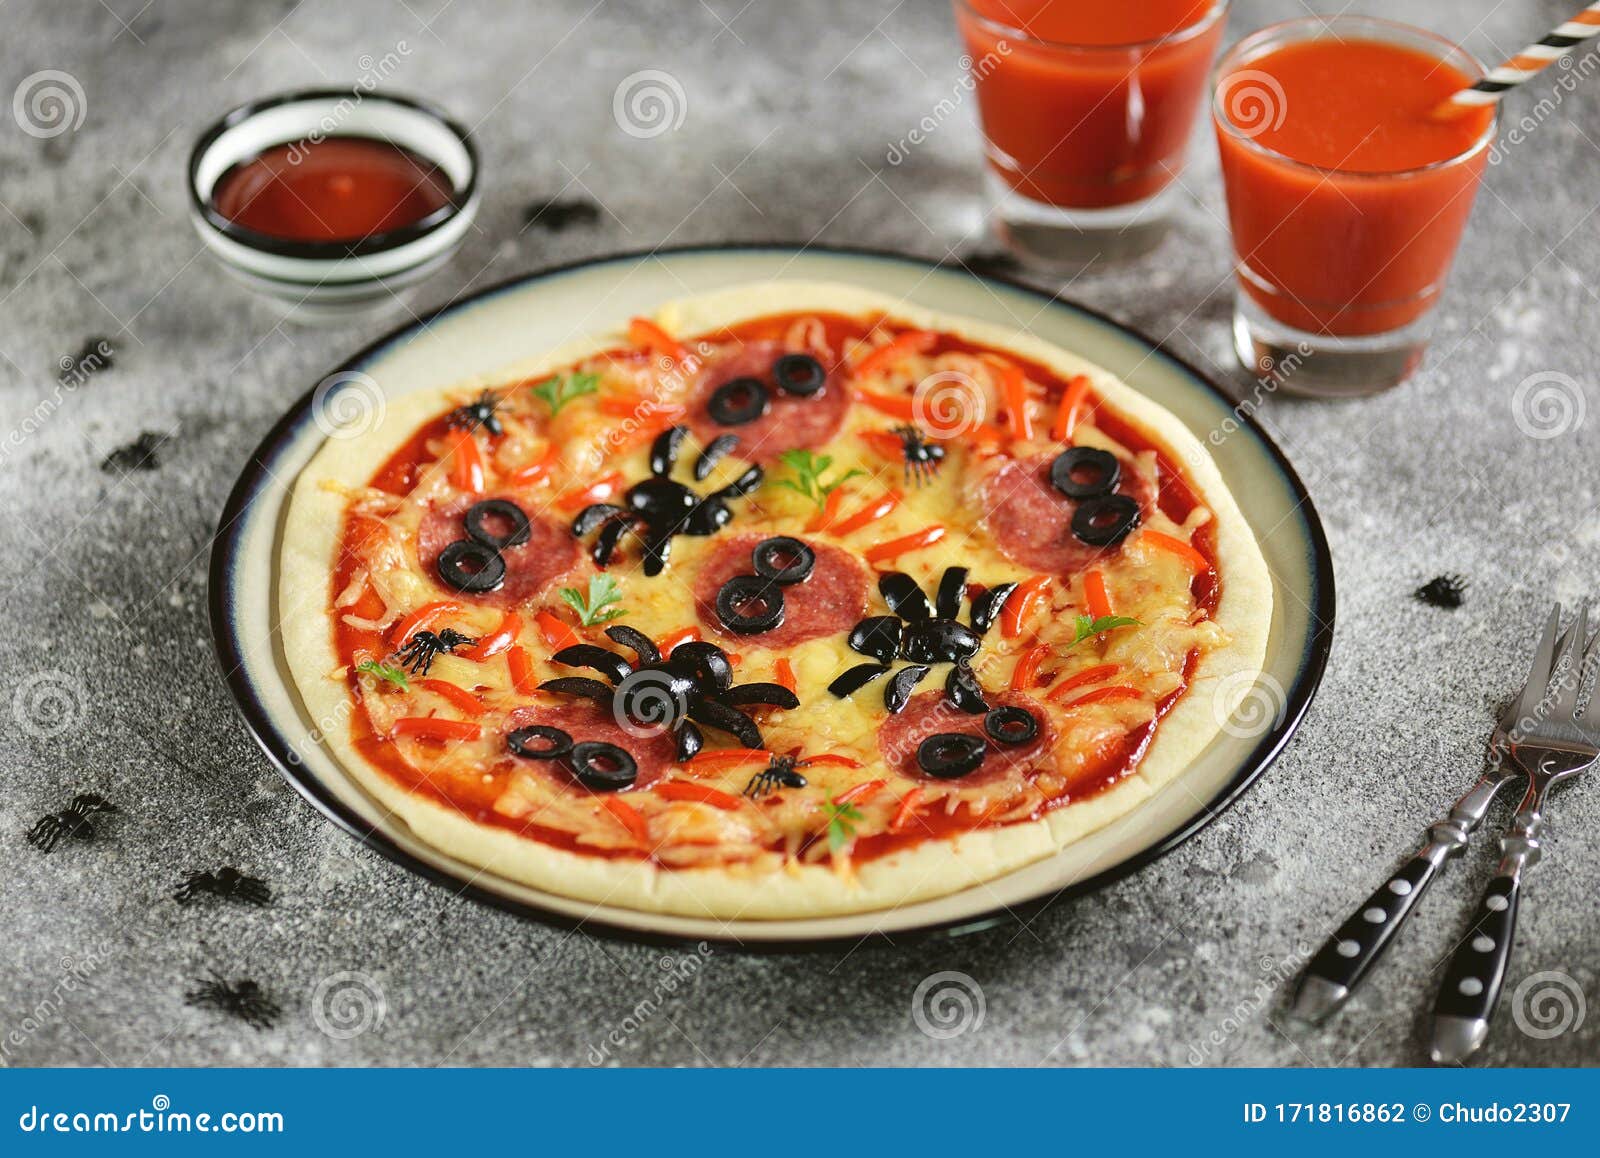 хэллоуин пицца рецепт фото 119